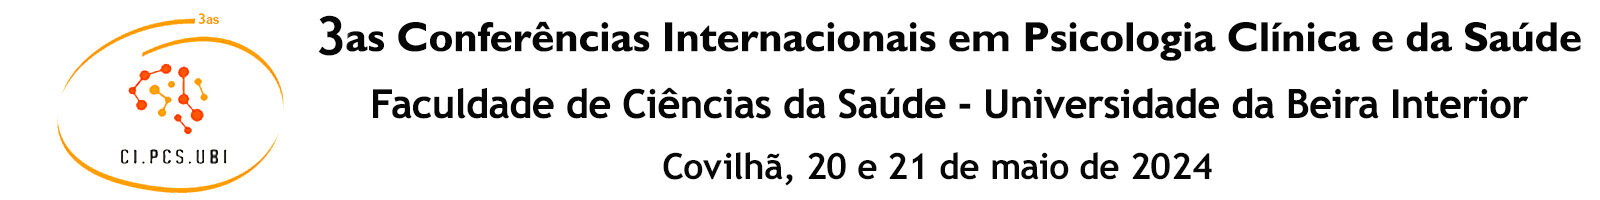 3as Conferências Internacionais em Psicologia Clínica e da Saúde da Universidade da Beira Interior